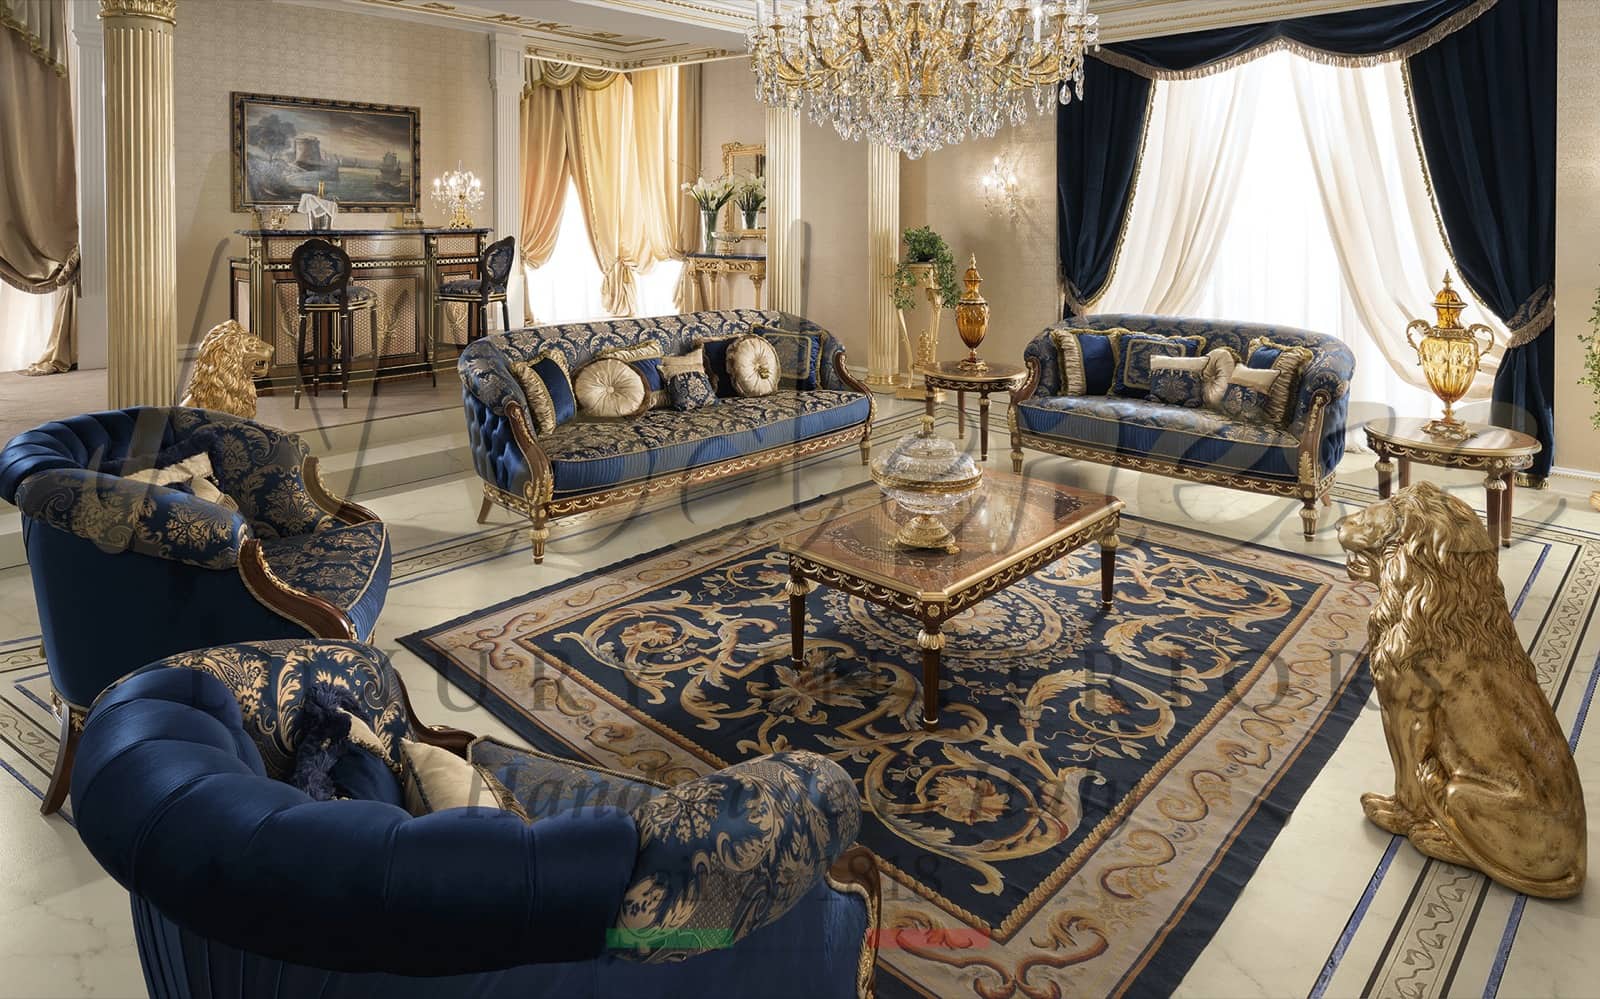 canapé de luxe majilis fait à la main sur mesure en Italie projets clés en main salon baroque italien traditionnel fabrication matériau en bois massif français élégant style unique villa d'empire